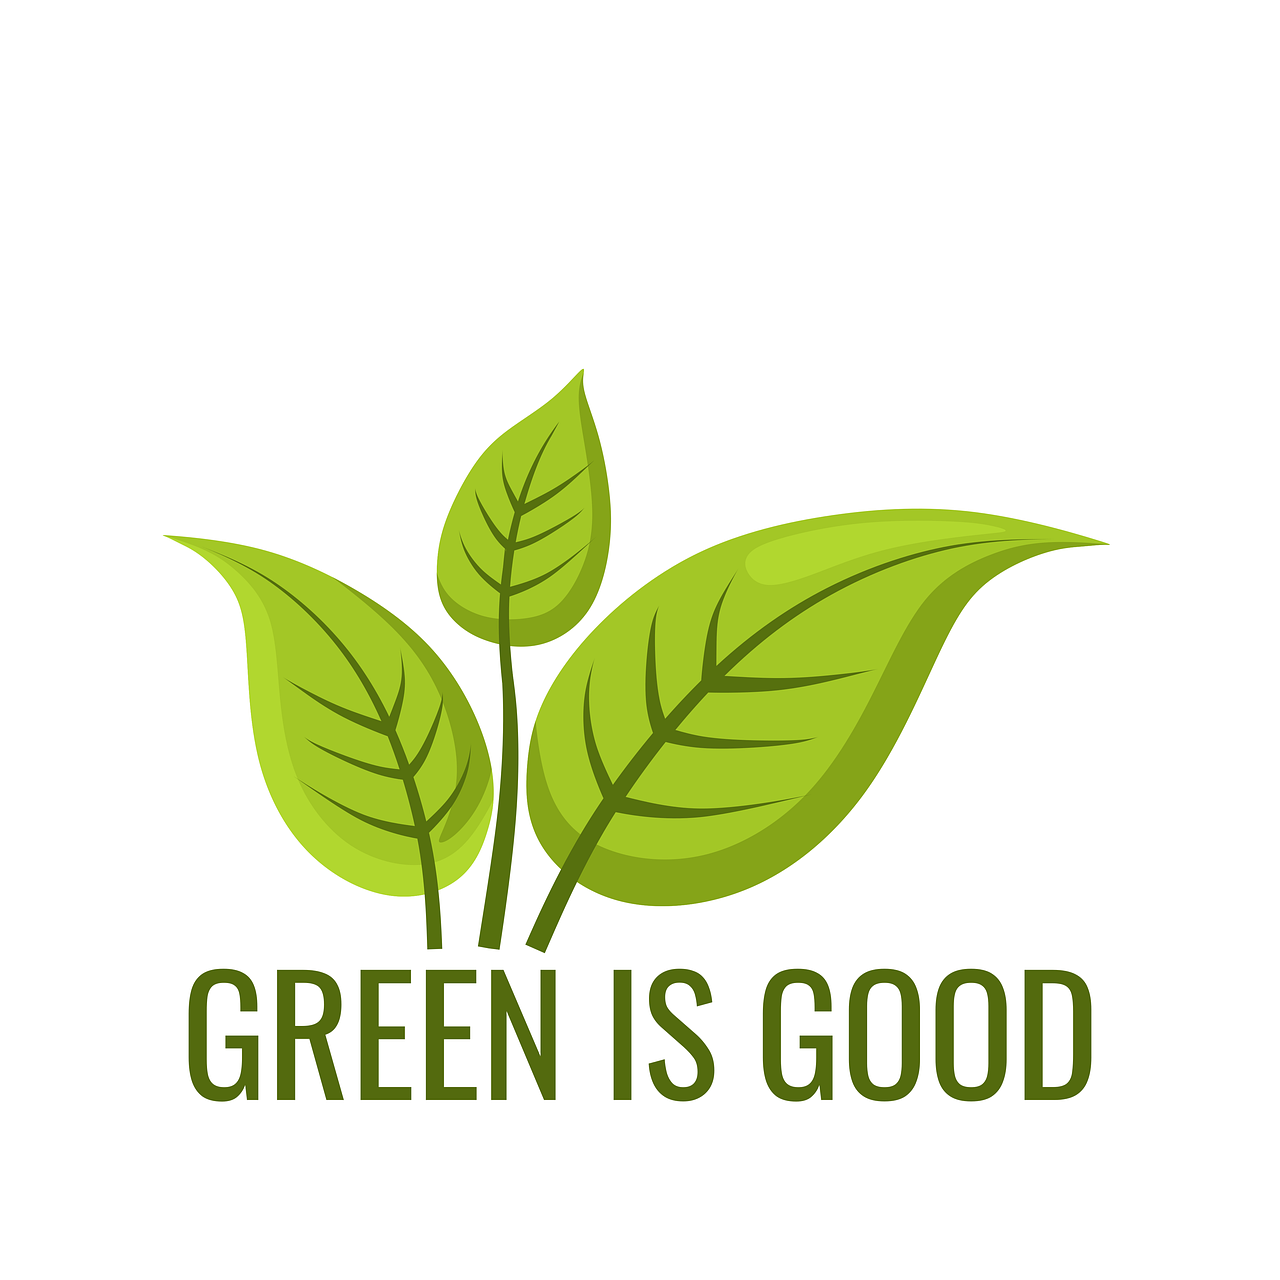 Cuore green all'EcoVillaggio Montale, la terza stagione è sul tema Agenda 2030